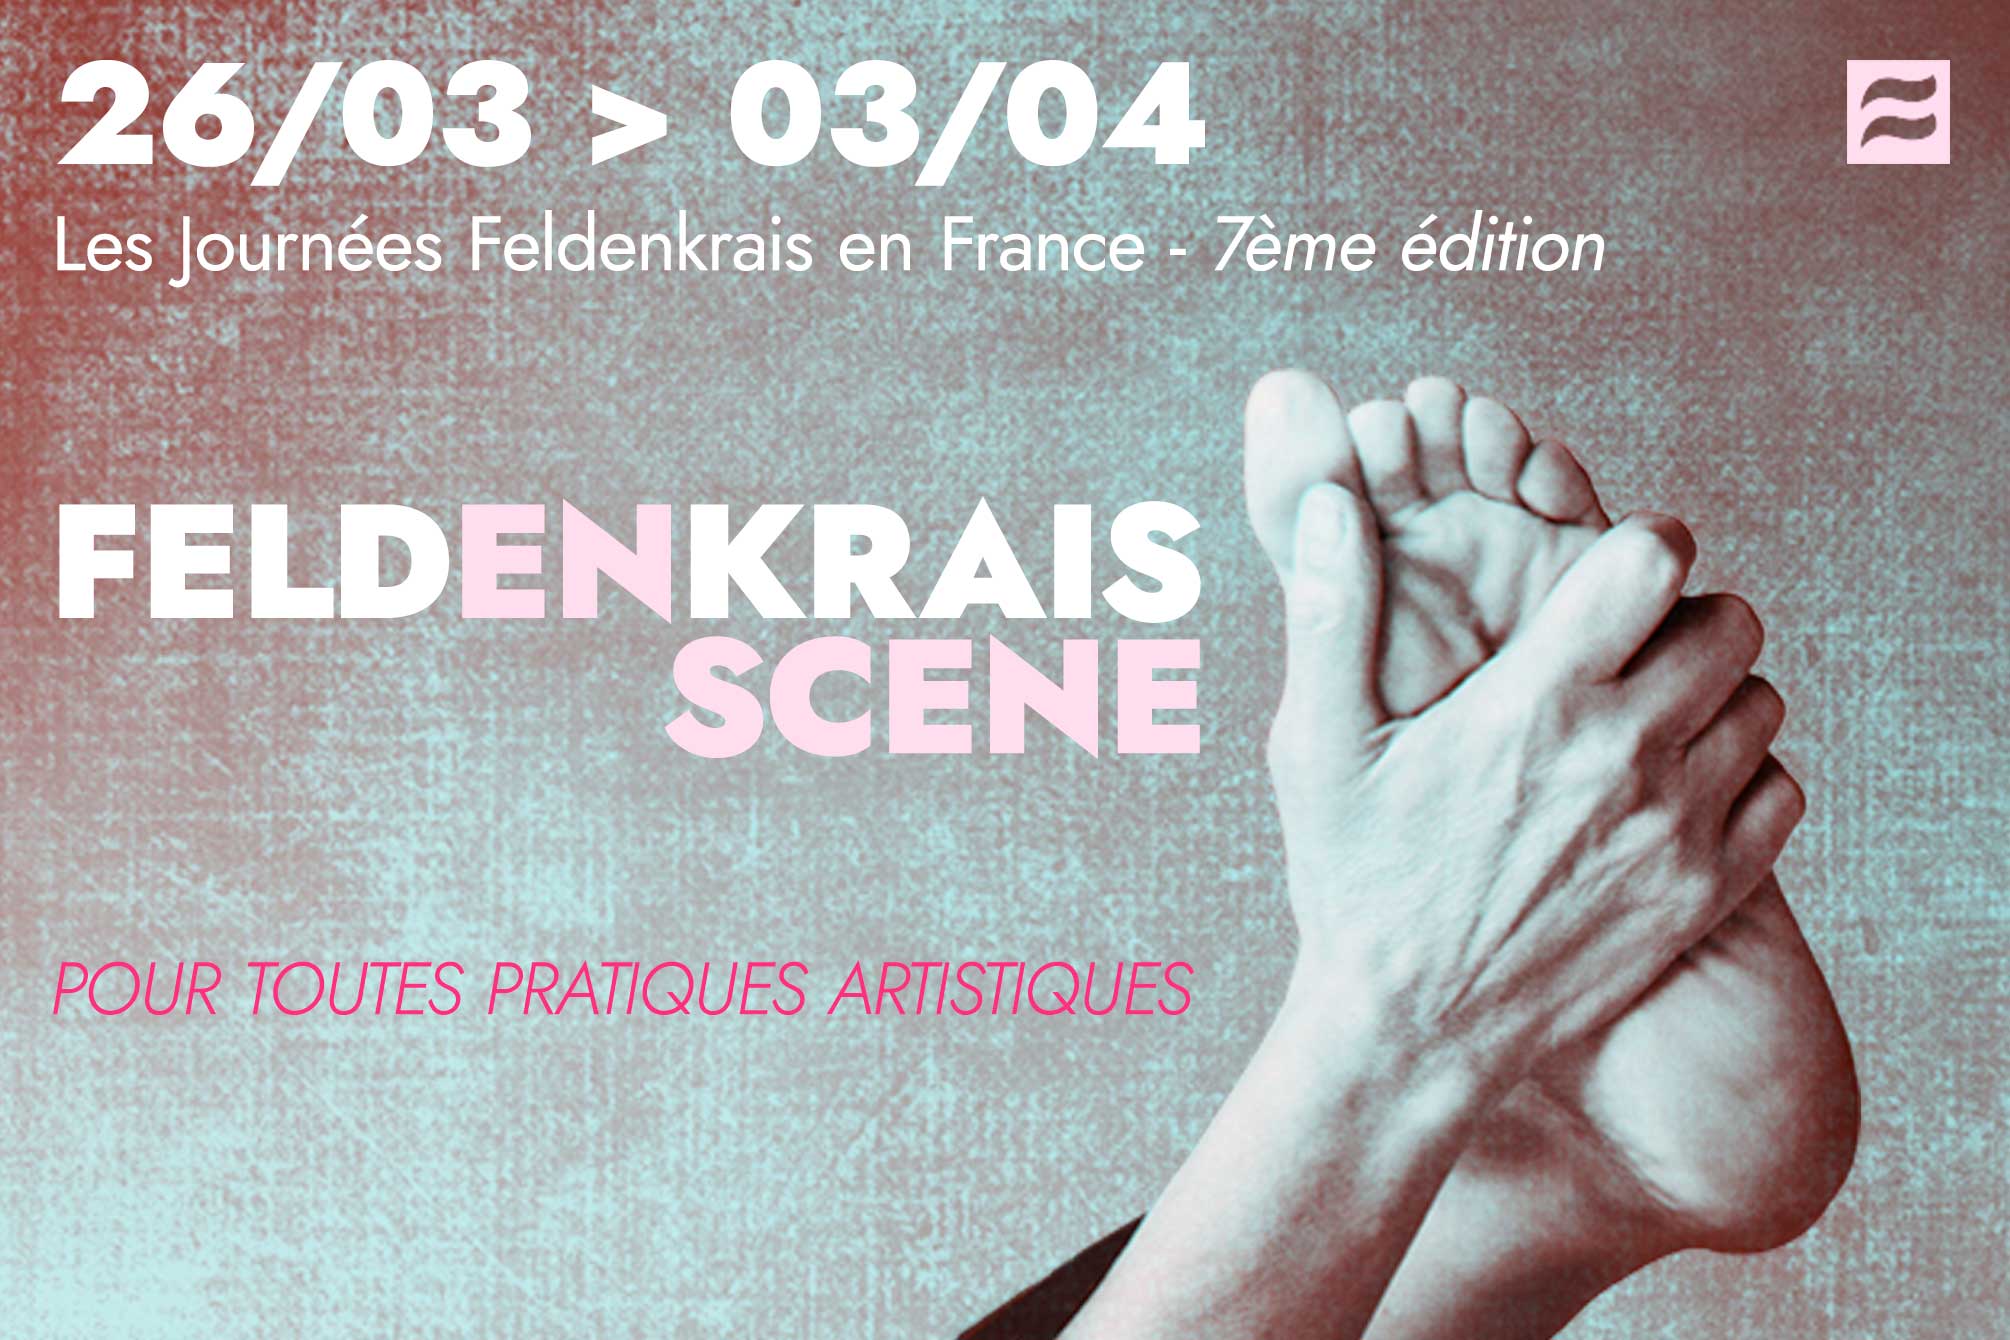 La septième édition des Journées Feldenkrais France en 2022 pour toutes pratiques artistiques